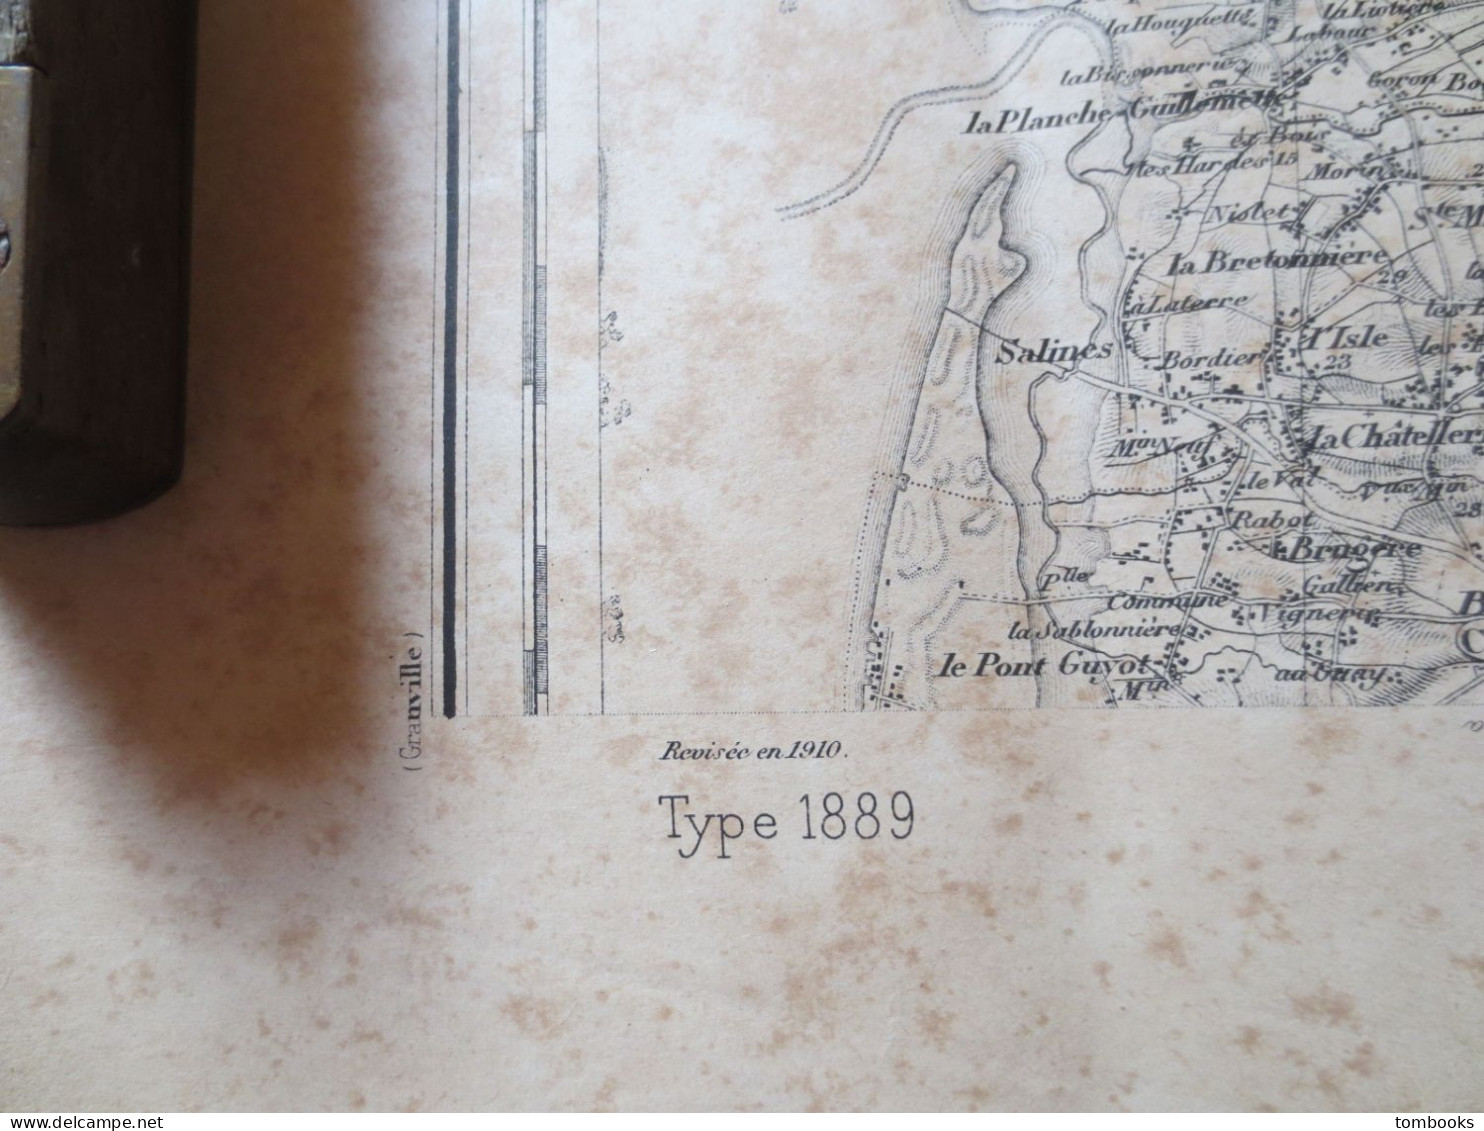 50 - Coutances - Ensemble de 4 cartes Maritimes et Terrestres - 1889 levé 1910 - ABE -